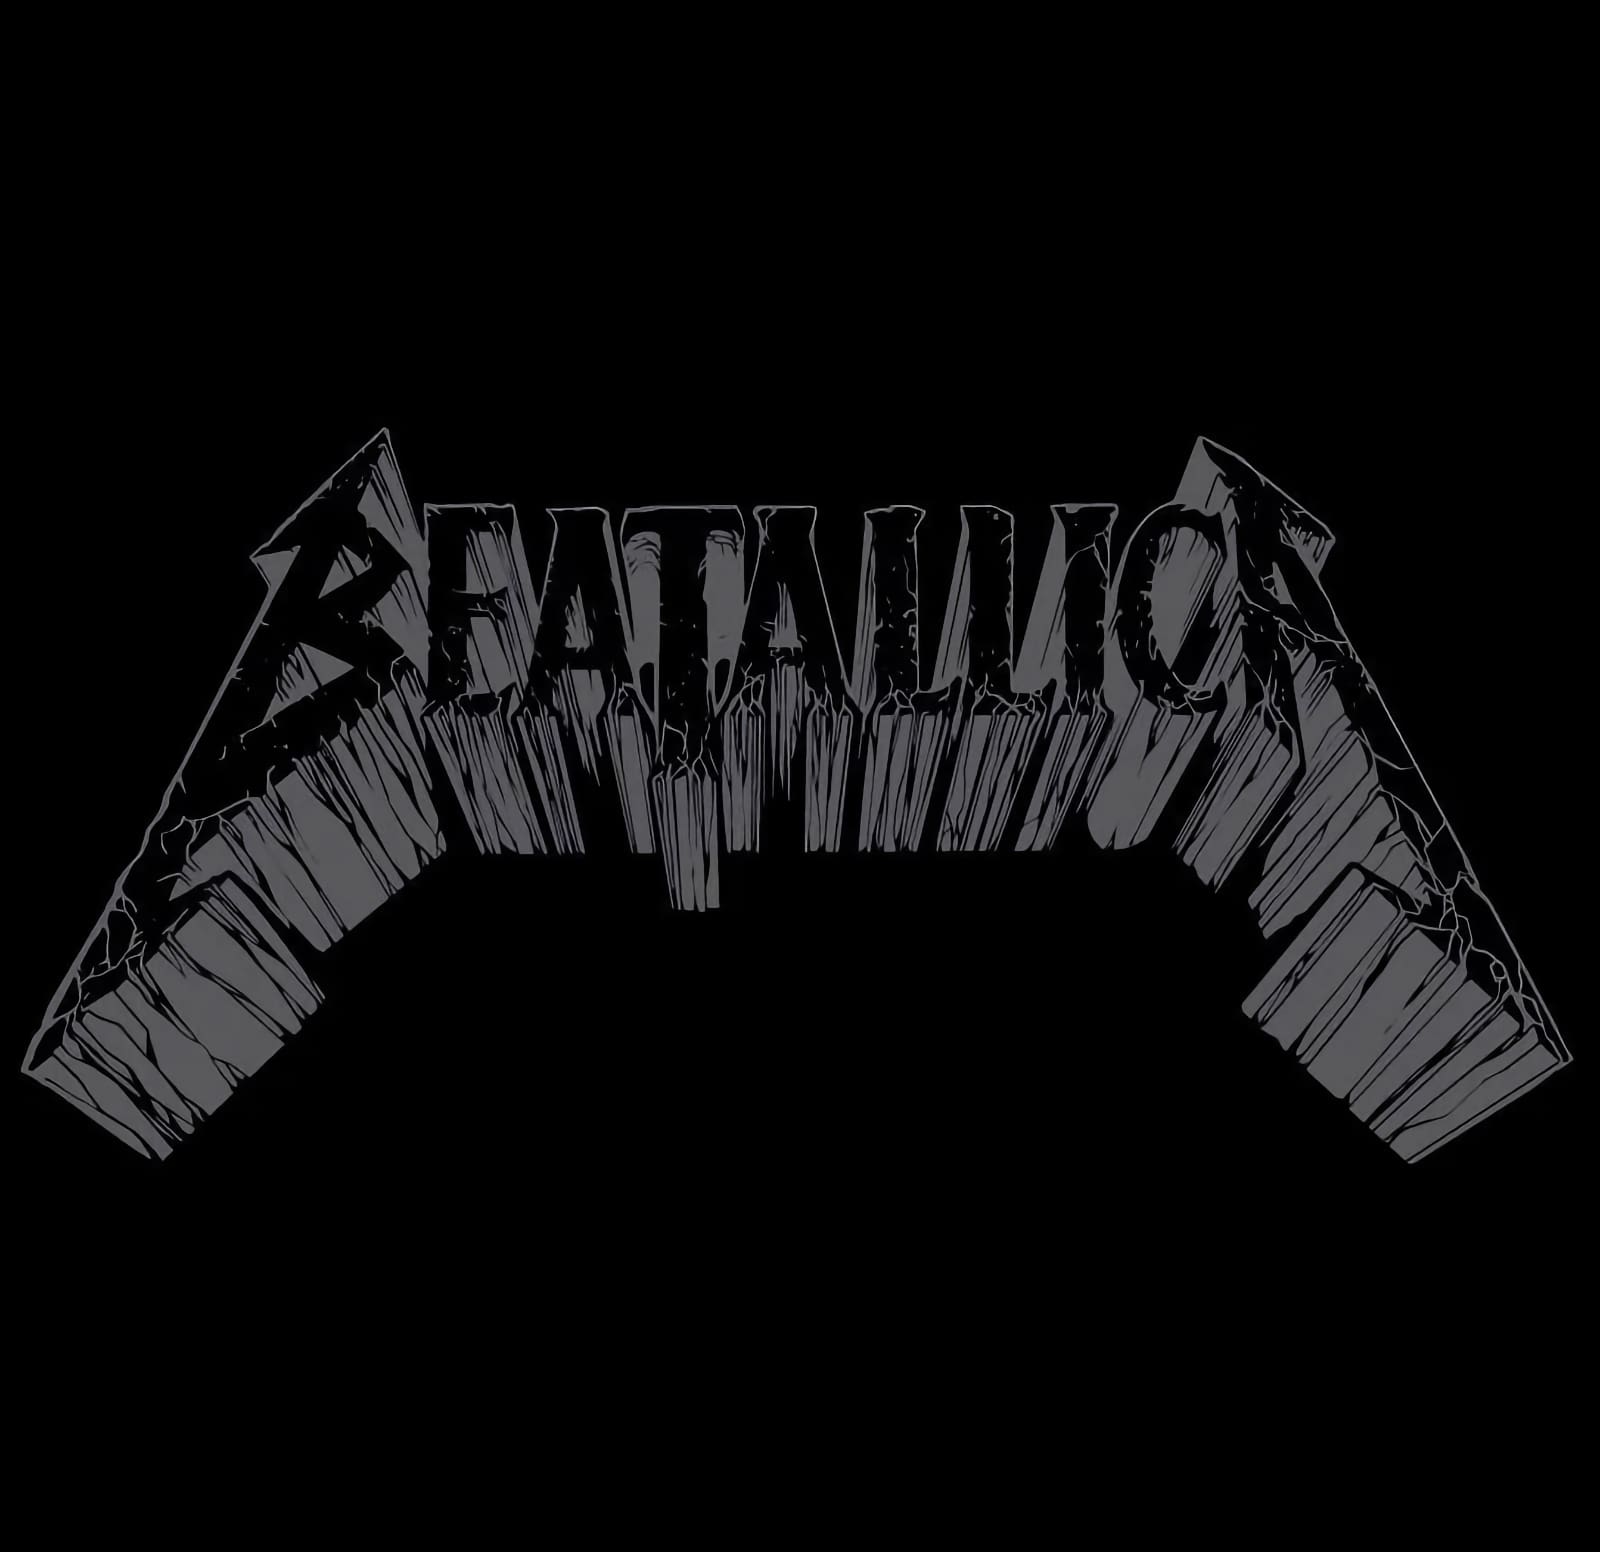 Beatallica logo Metallica Beatles